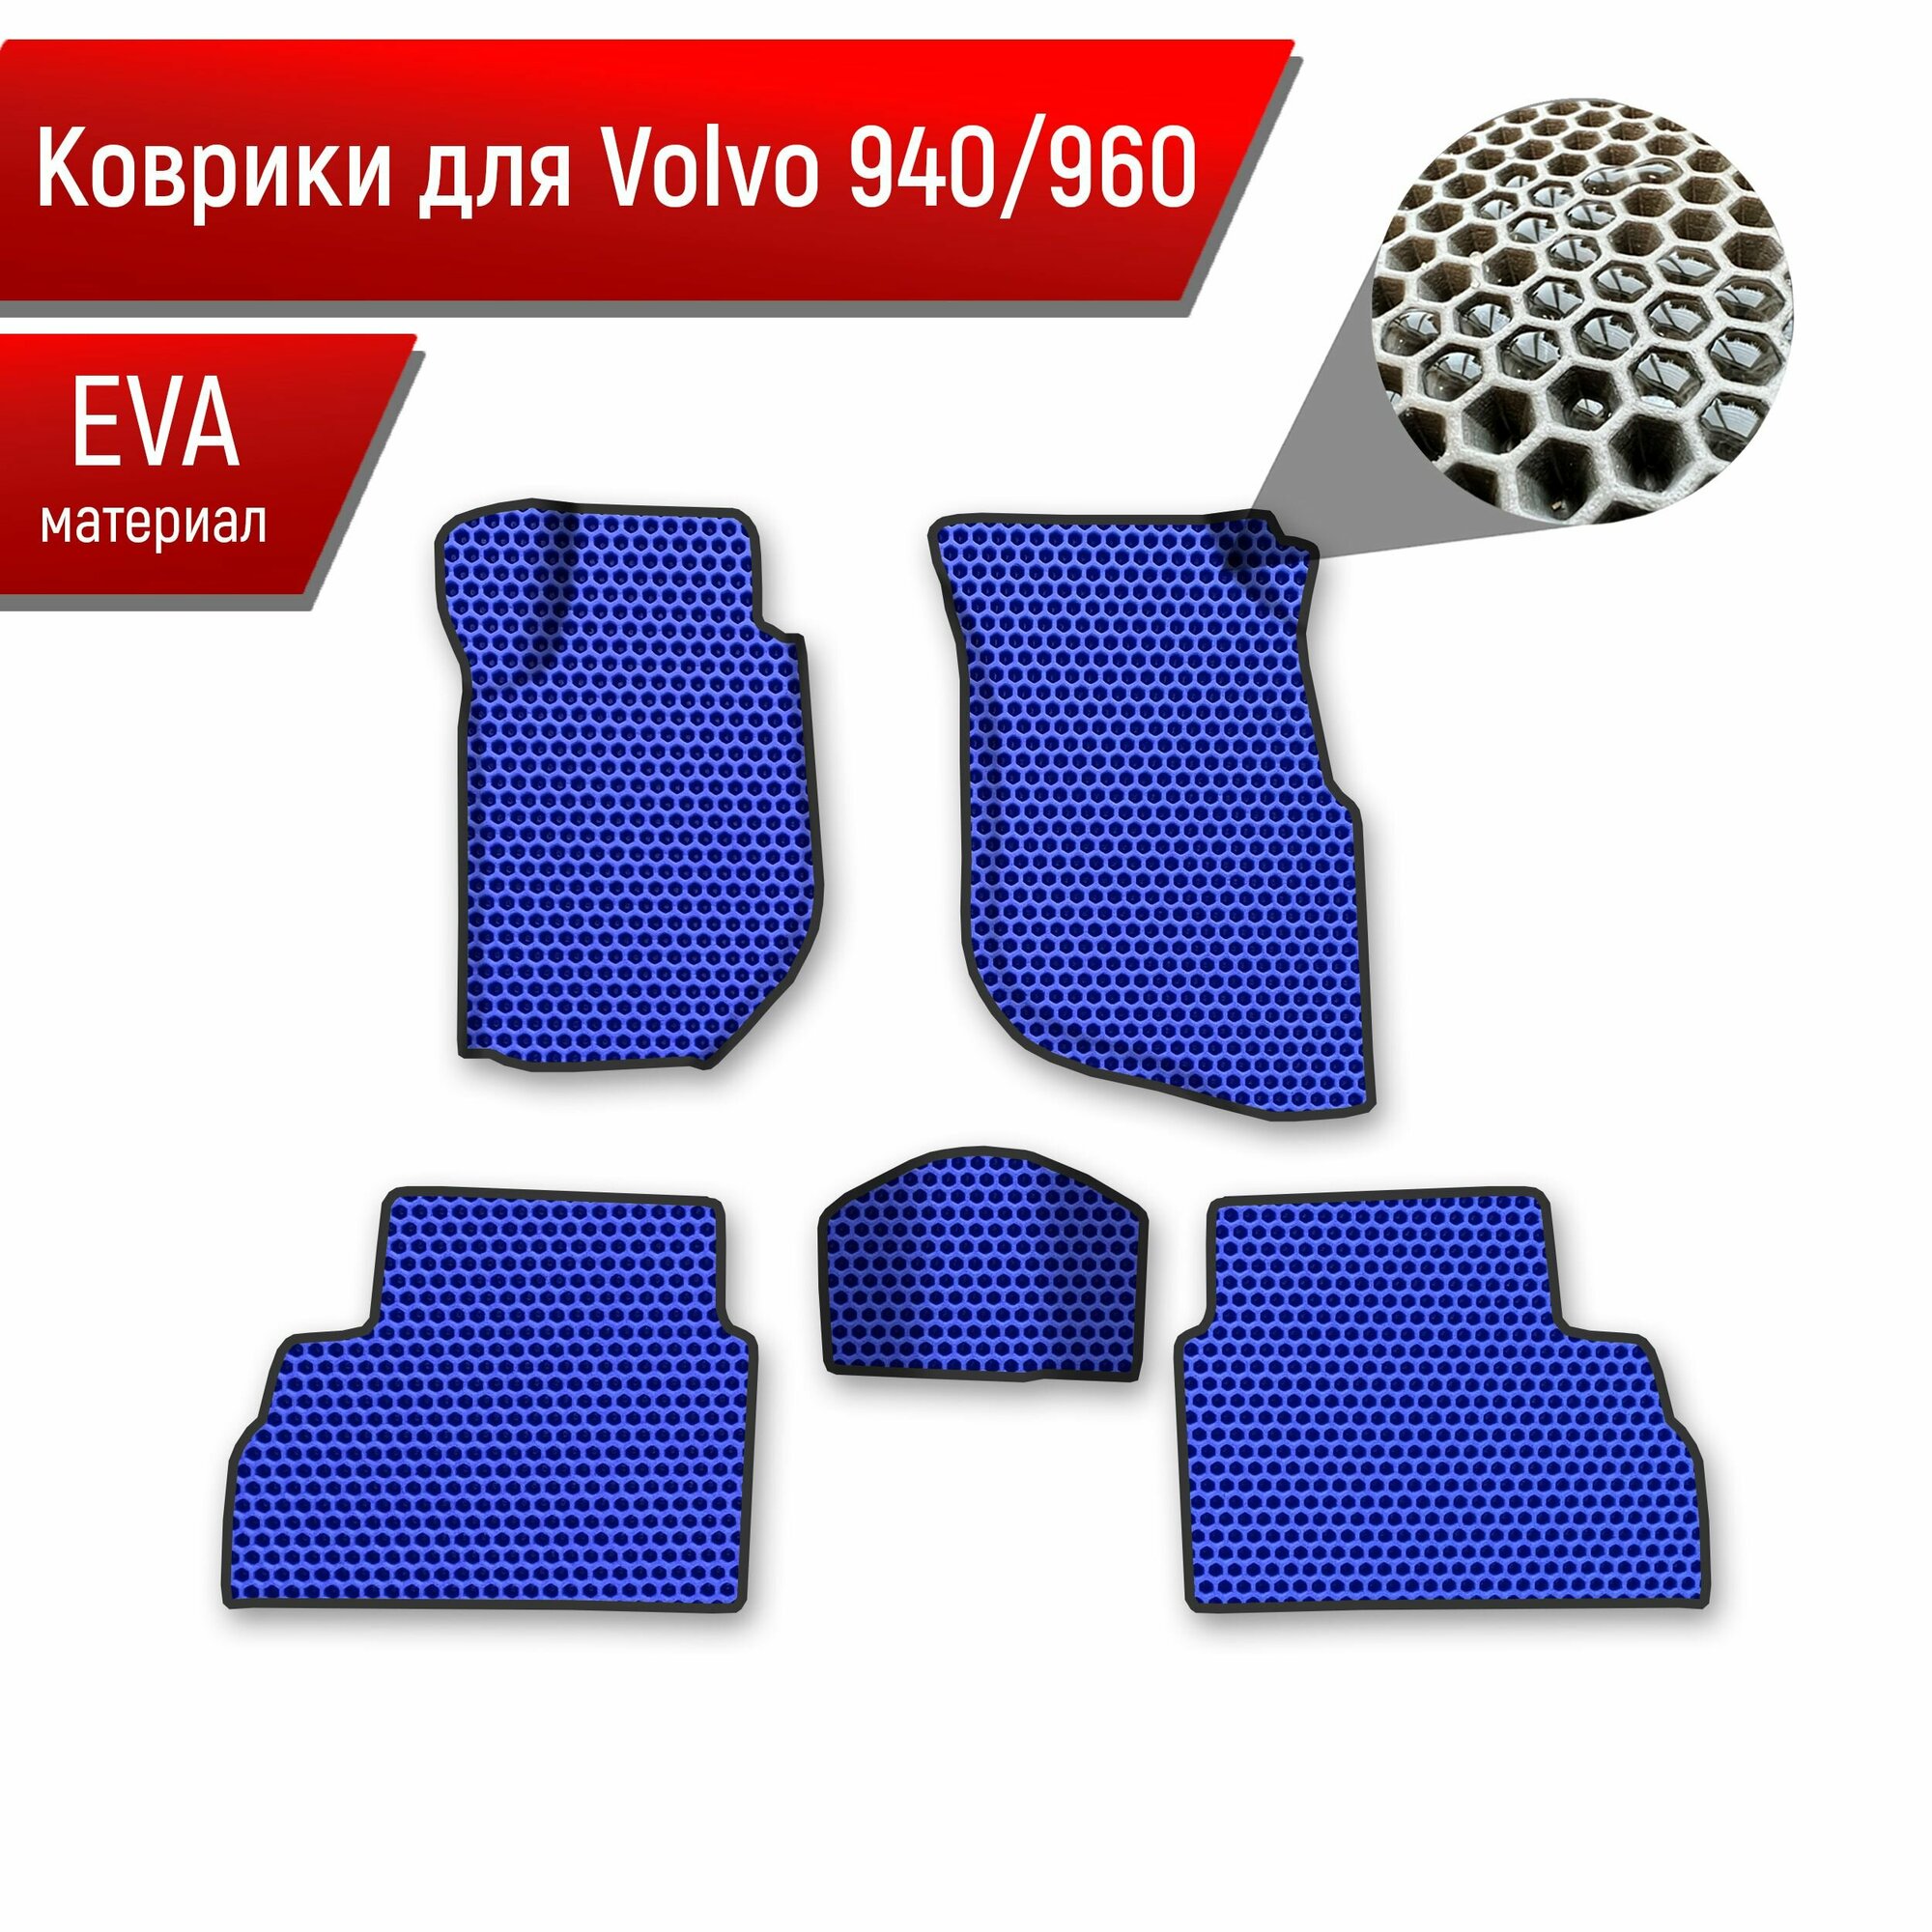 Коврики ЭВА сота для авто Volvo 940960 / Вольво 940 960 1988-1998 Г. В. Синий с Чёрным кантом